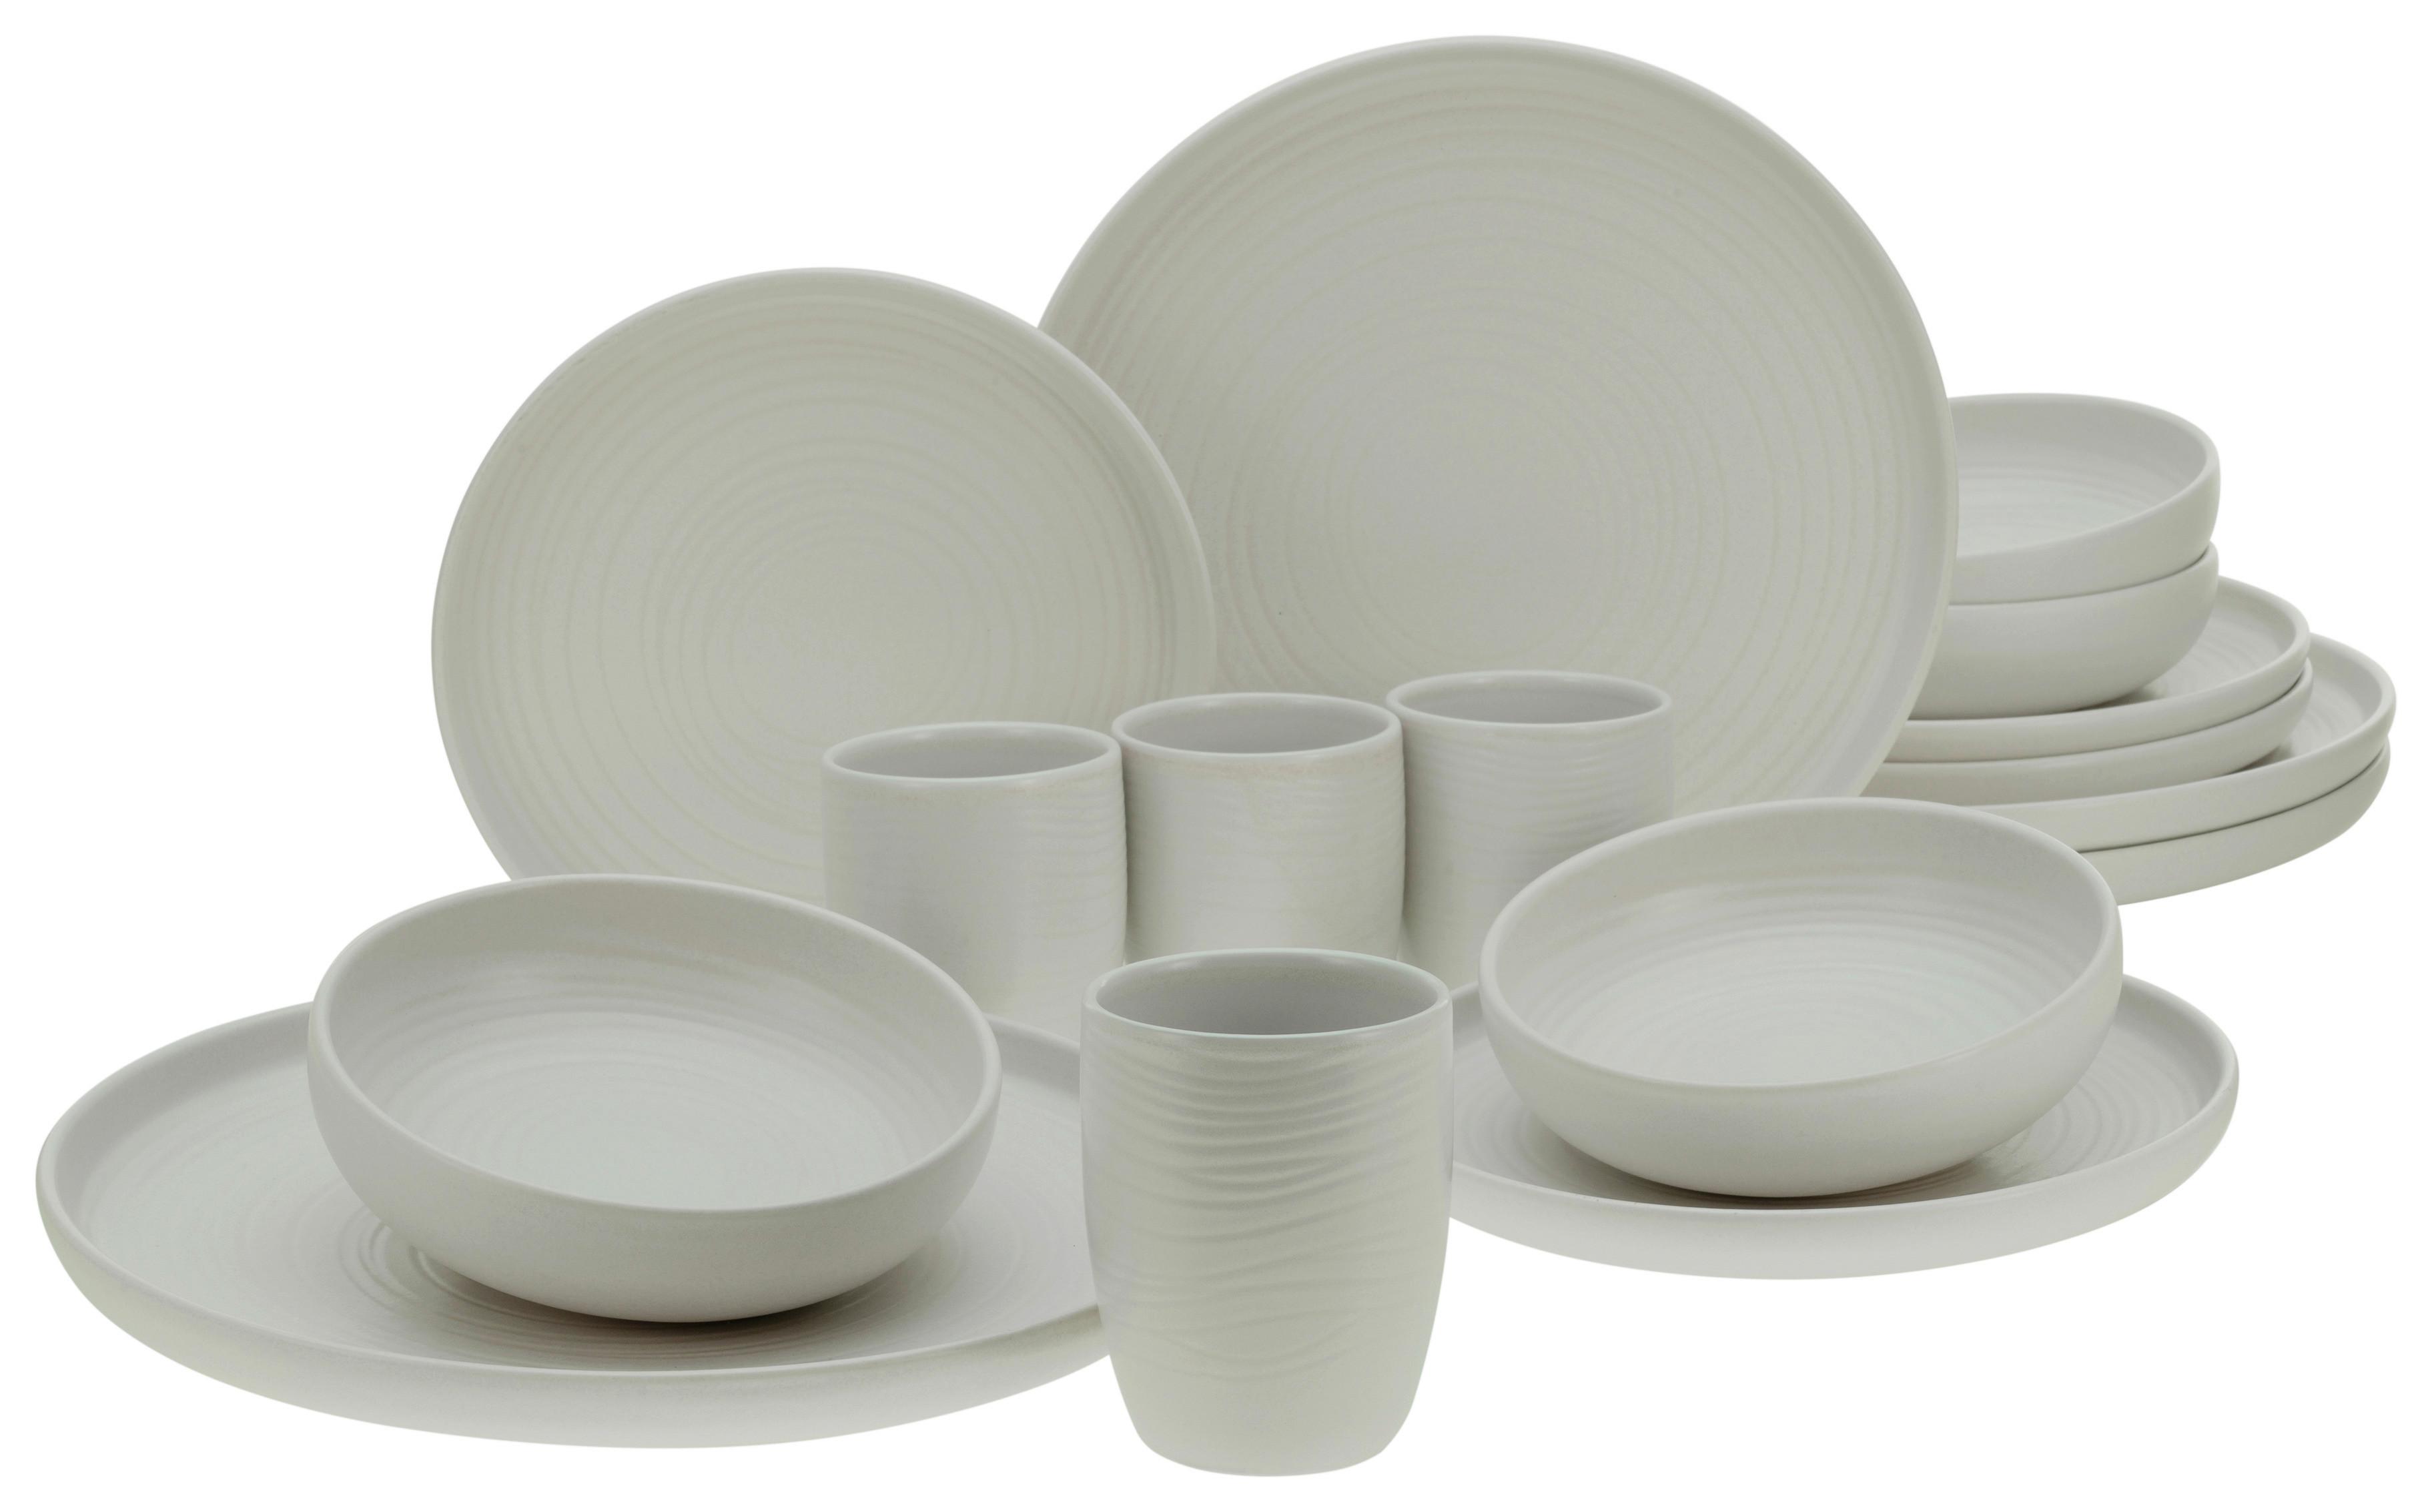 SERWIS OBIADOWO-ŚNIADANIOWY 23863 - biały, Modern, ceramika (40,5/37/49,5cm) - Creatable